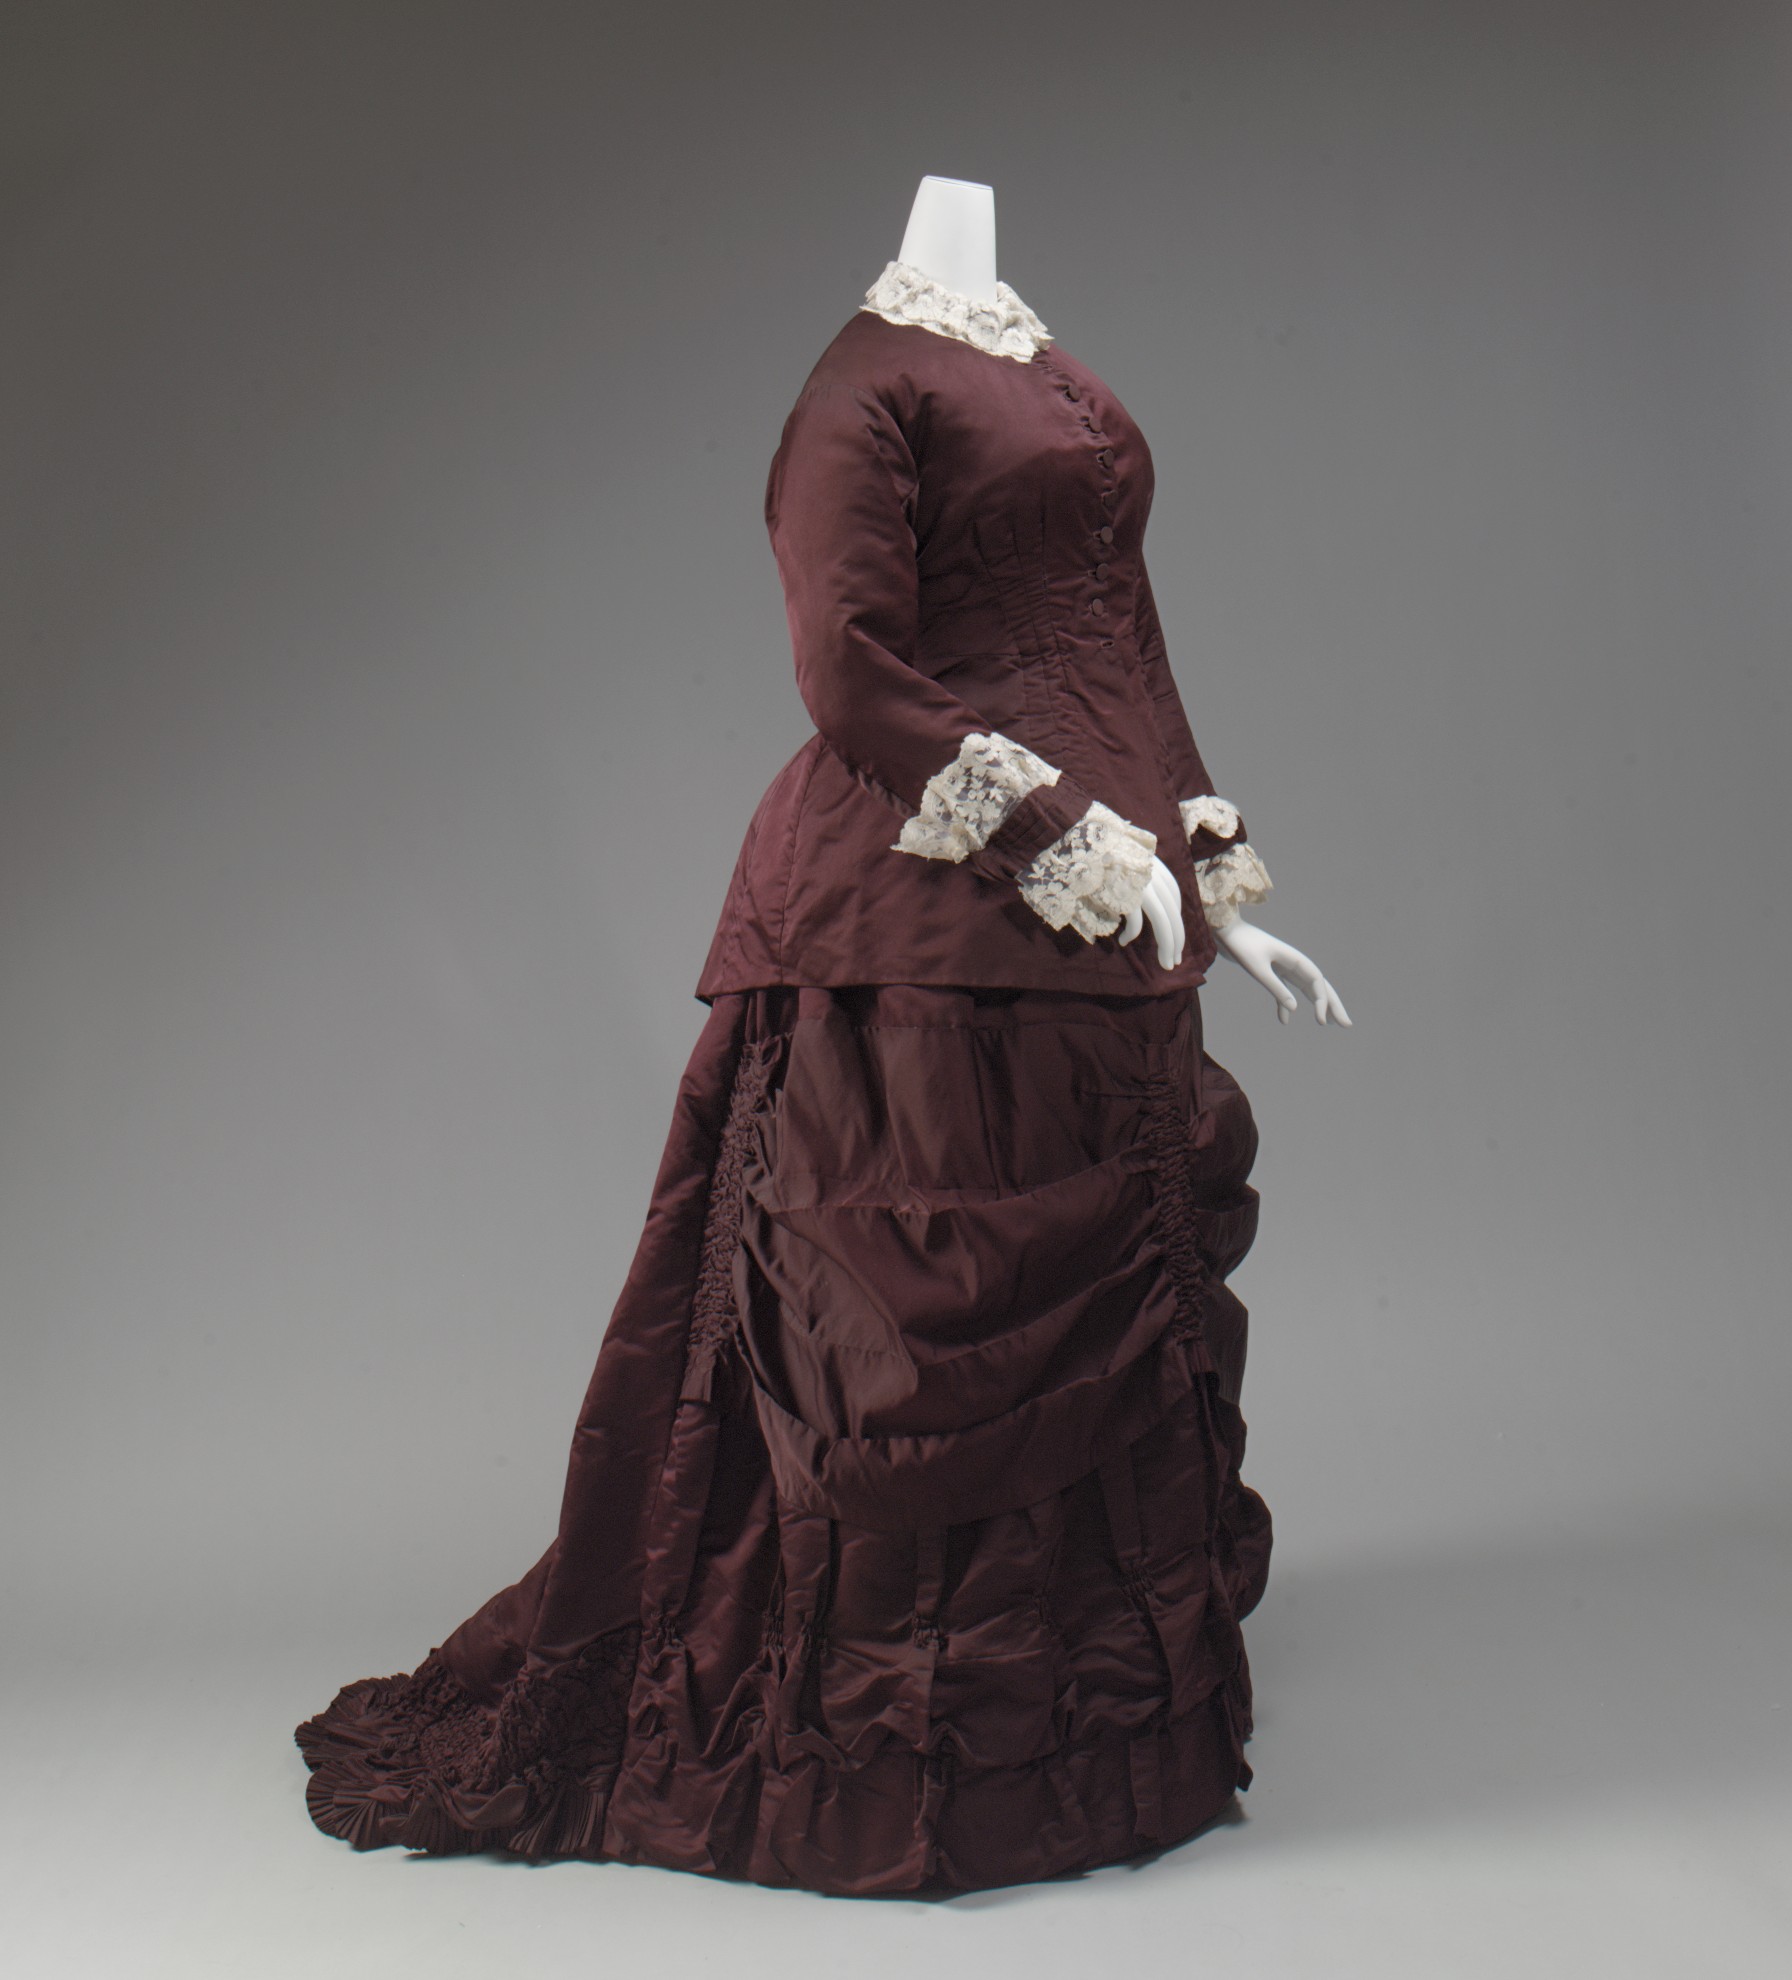 Платья конца 19 века. Викторианское платье 19 век. Платья 19 век Англия. Фуляровое платье 19 век. Женская одежда 19 века в Англии.